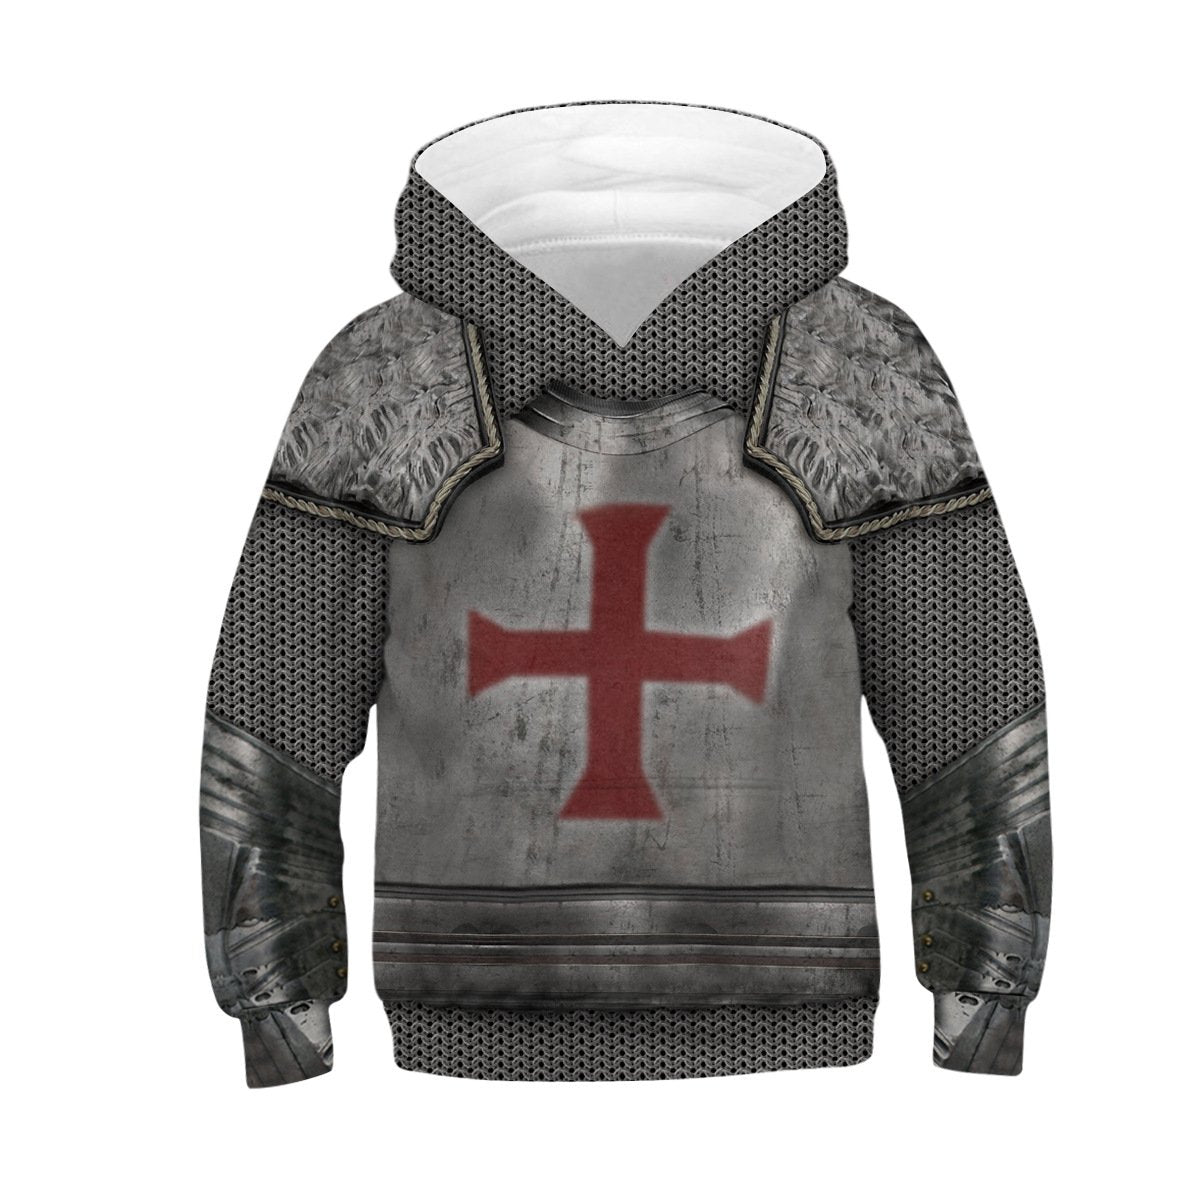 Kids Knights Templar Hoodie  Unisex Sweatshirt - mihoodie